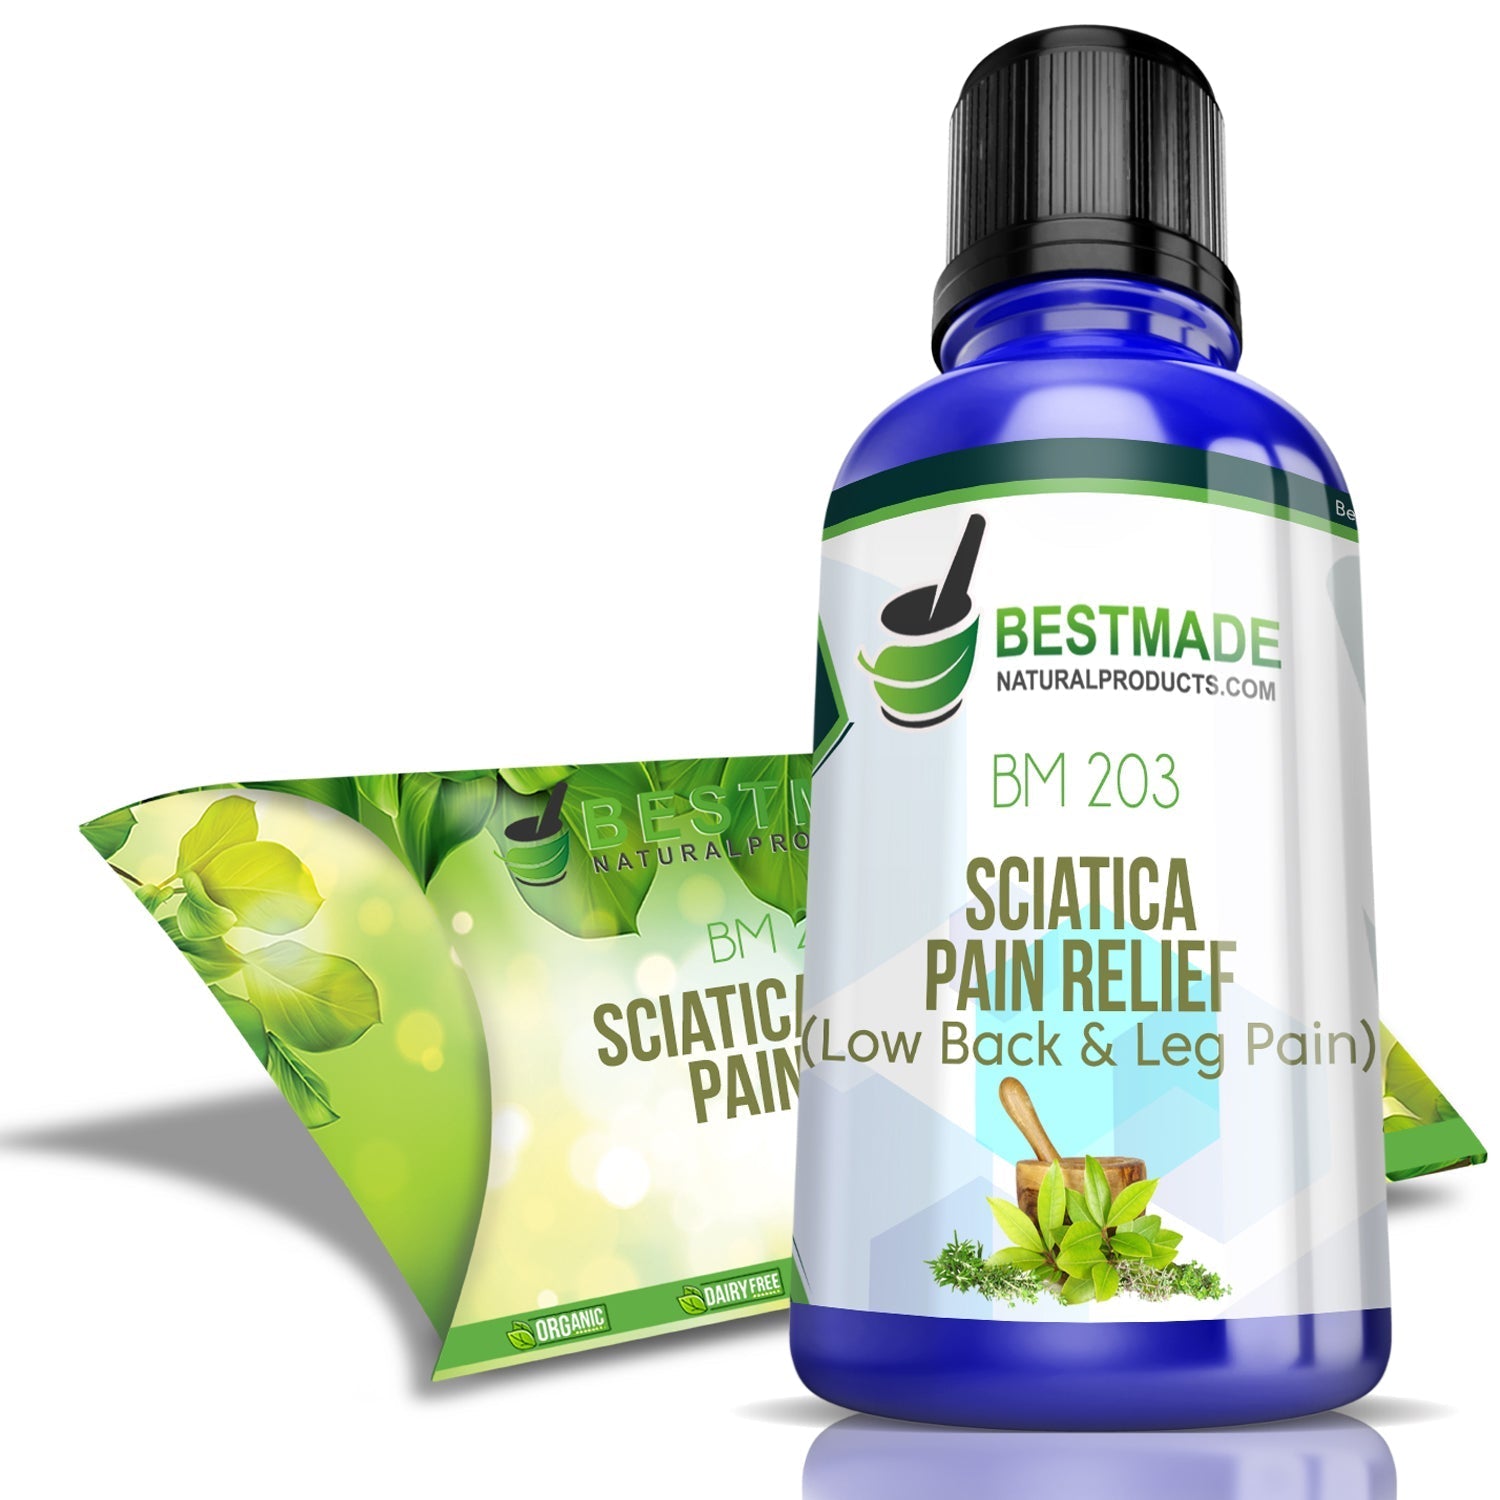 Sciatica Pain Relief Oil, Grade Standard: Medicine Grade, for Personal